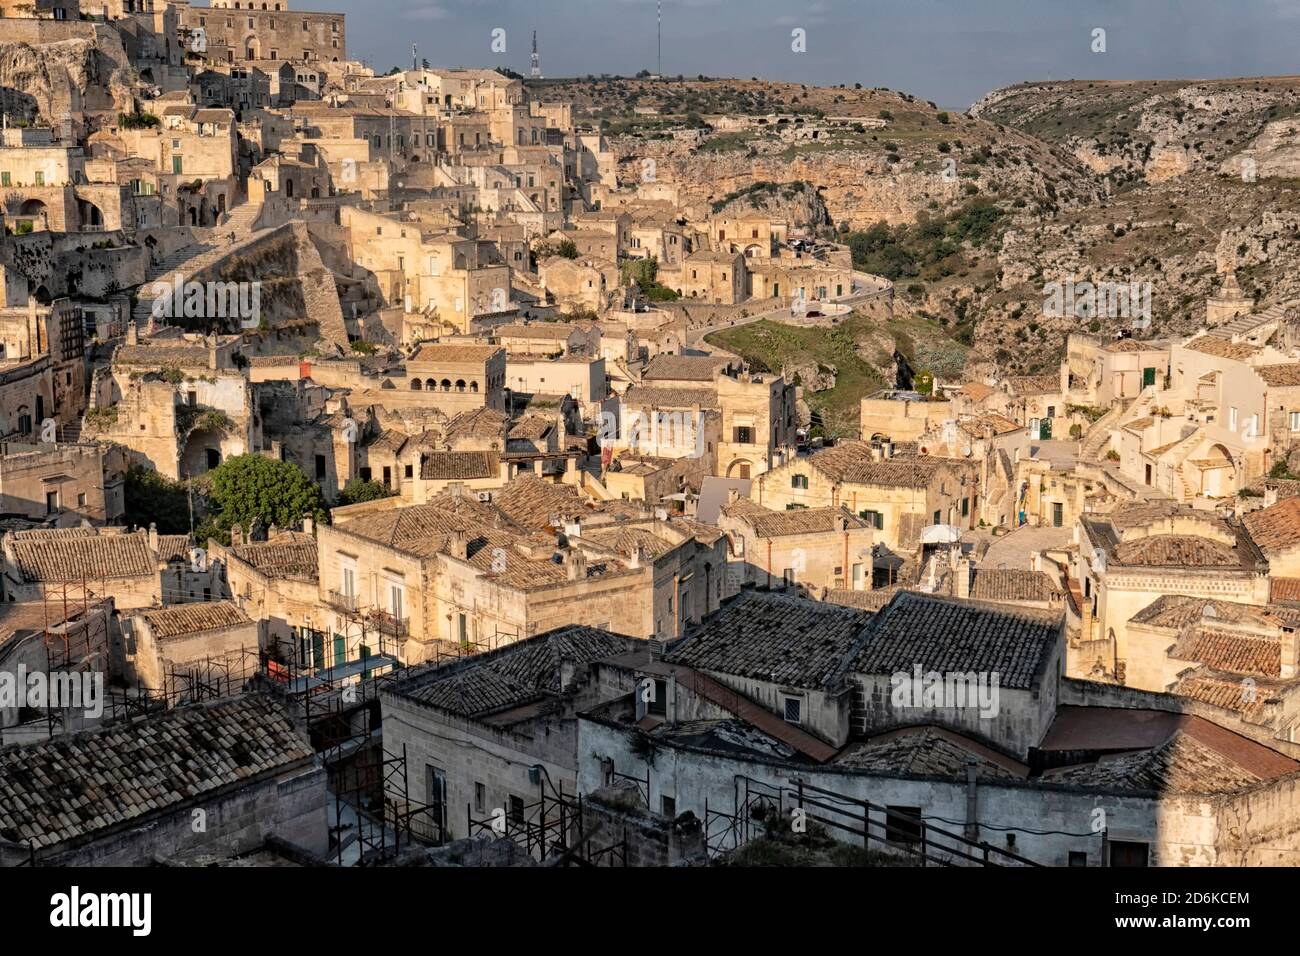 Blick auf die Stadt Matera von der Klippe, Matera, Apulien, Italien Matera ist bekannt für seine alten Höhlenwohnungen und wurde oft als "einer von t zitiert Stockfoto